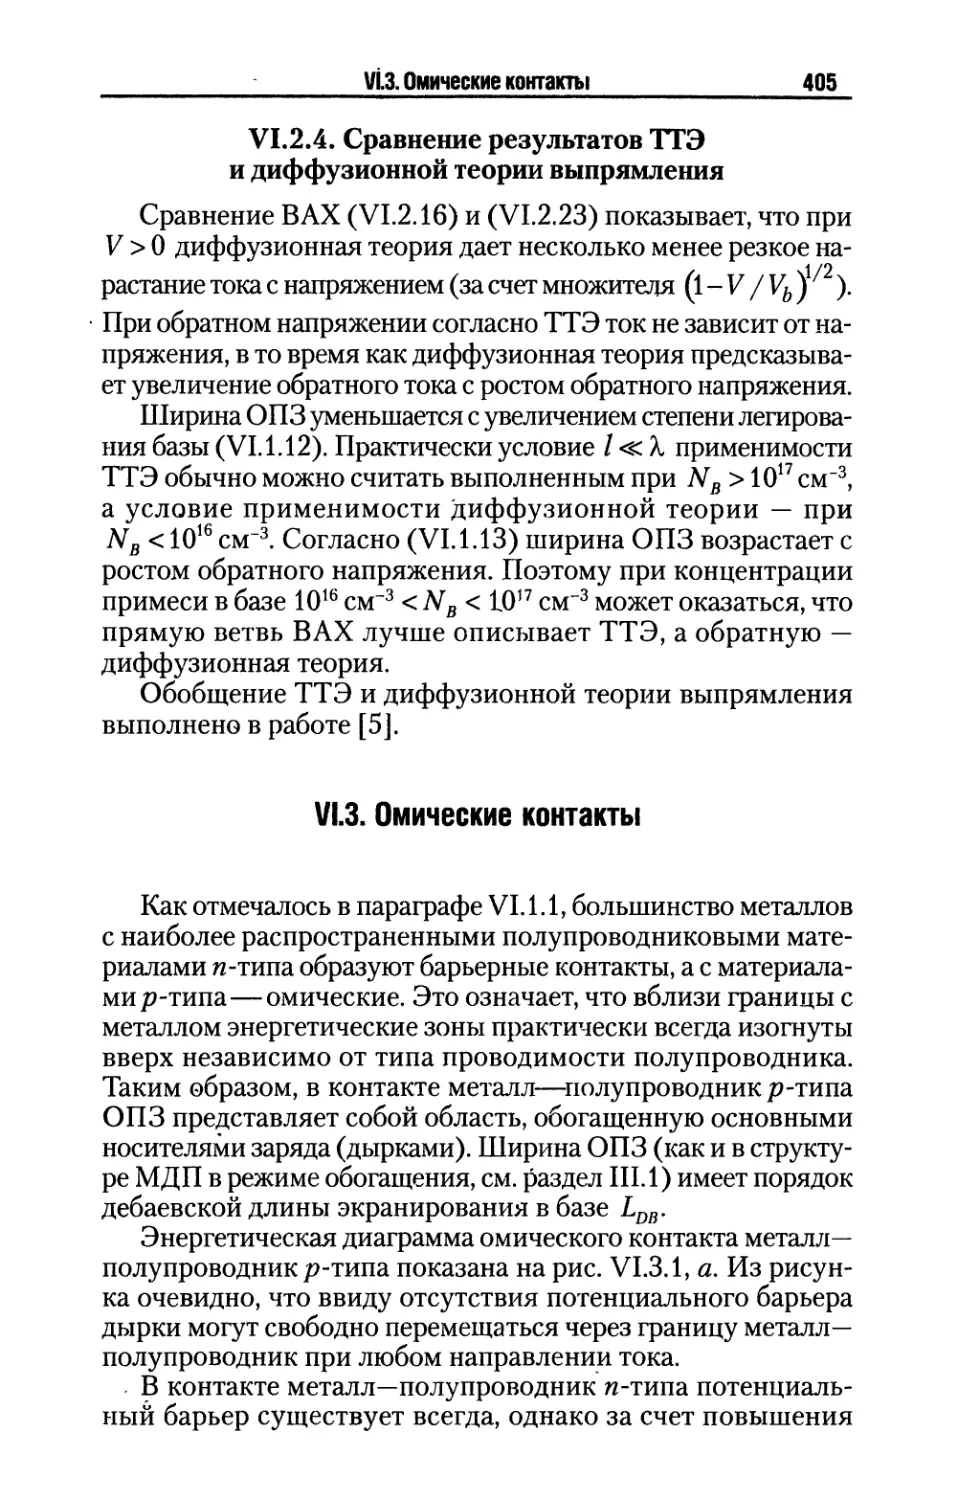 VI.2.4. Сравнение результатов ТТЭ и диффузионной теории выпрямления
VI.3. Омические контакты